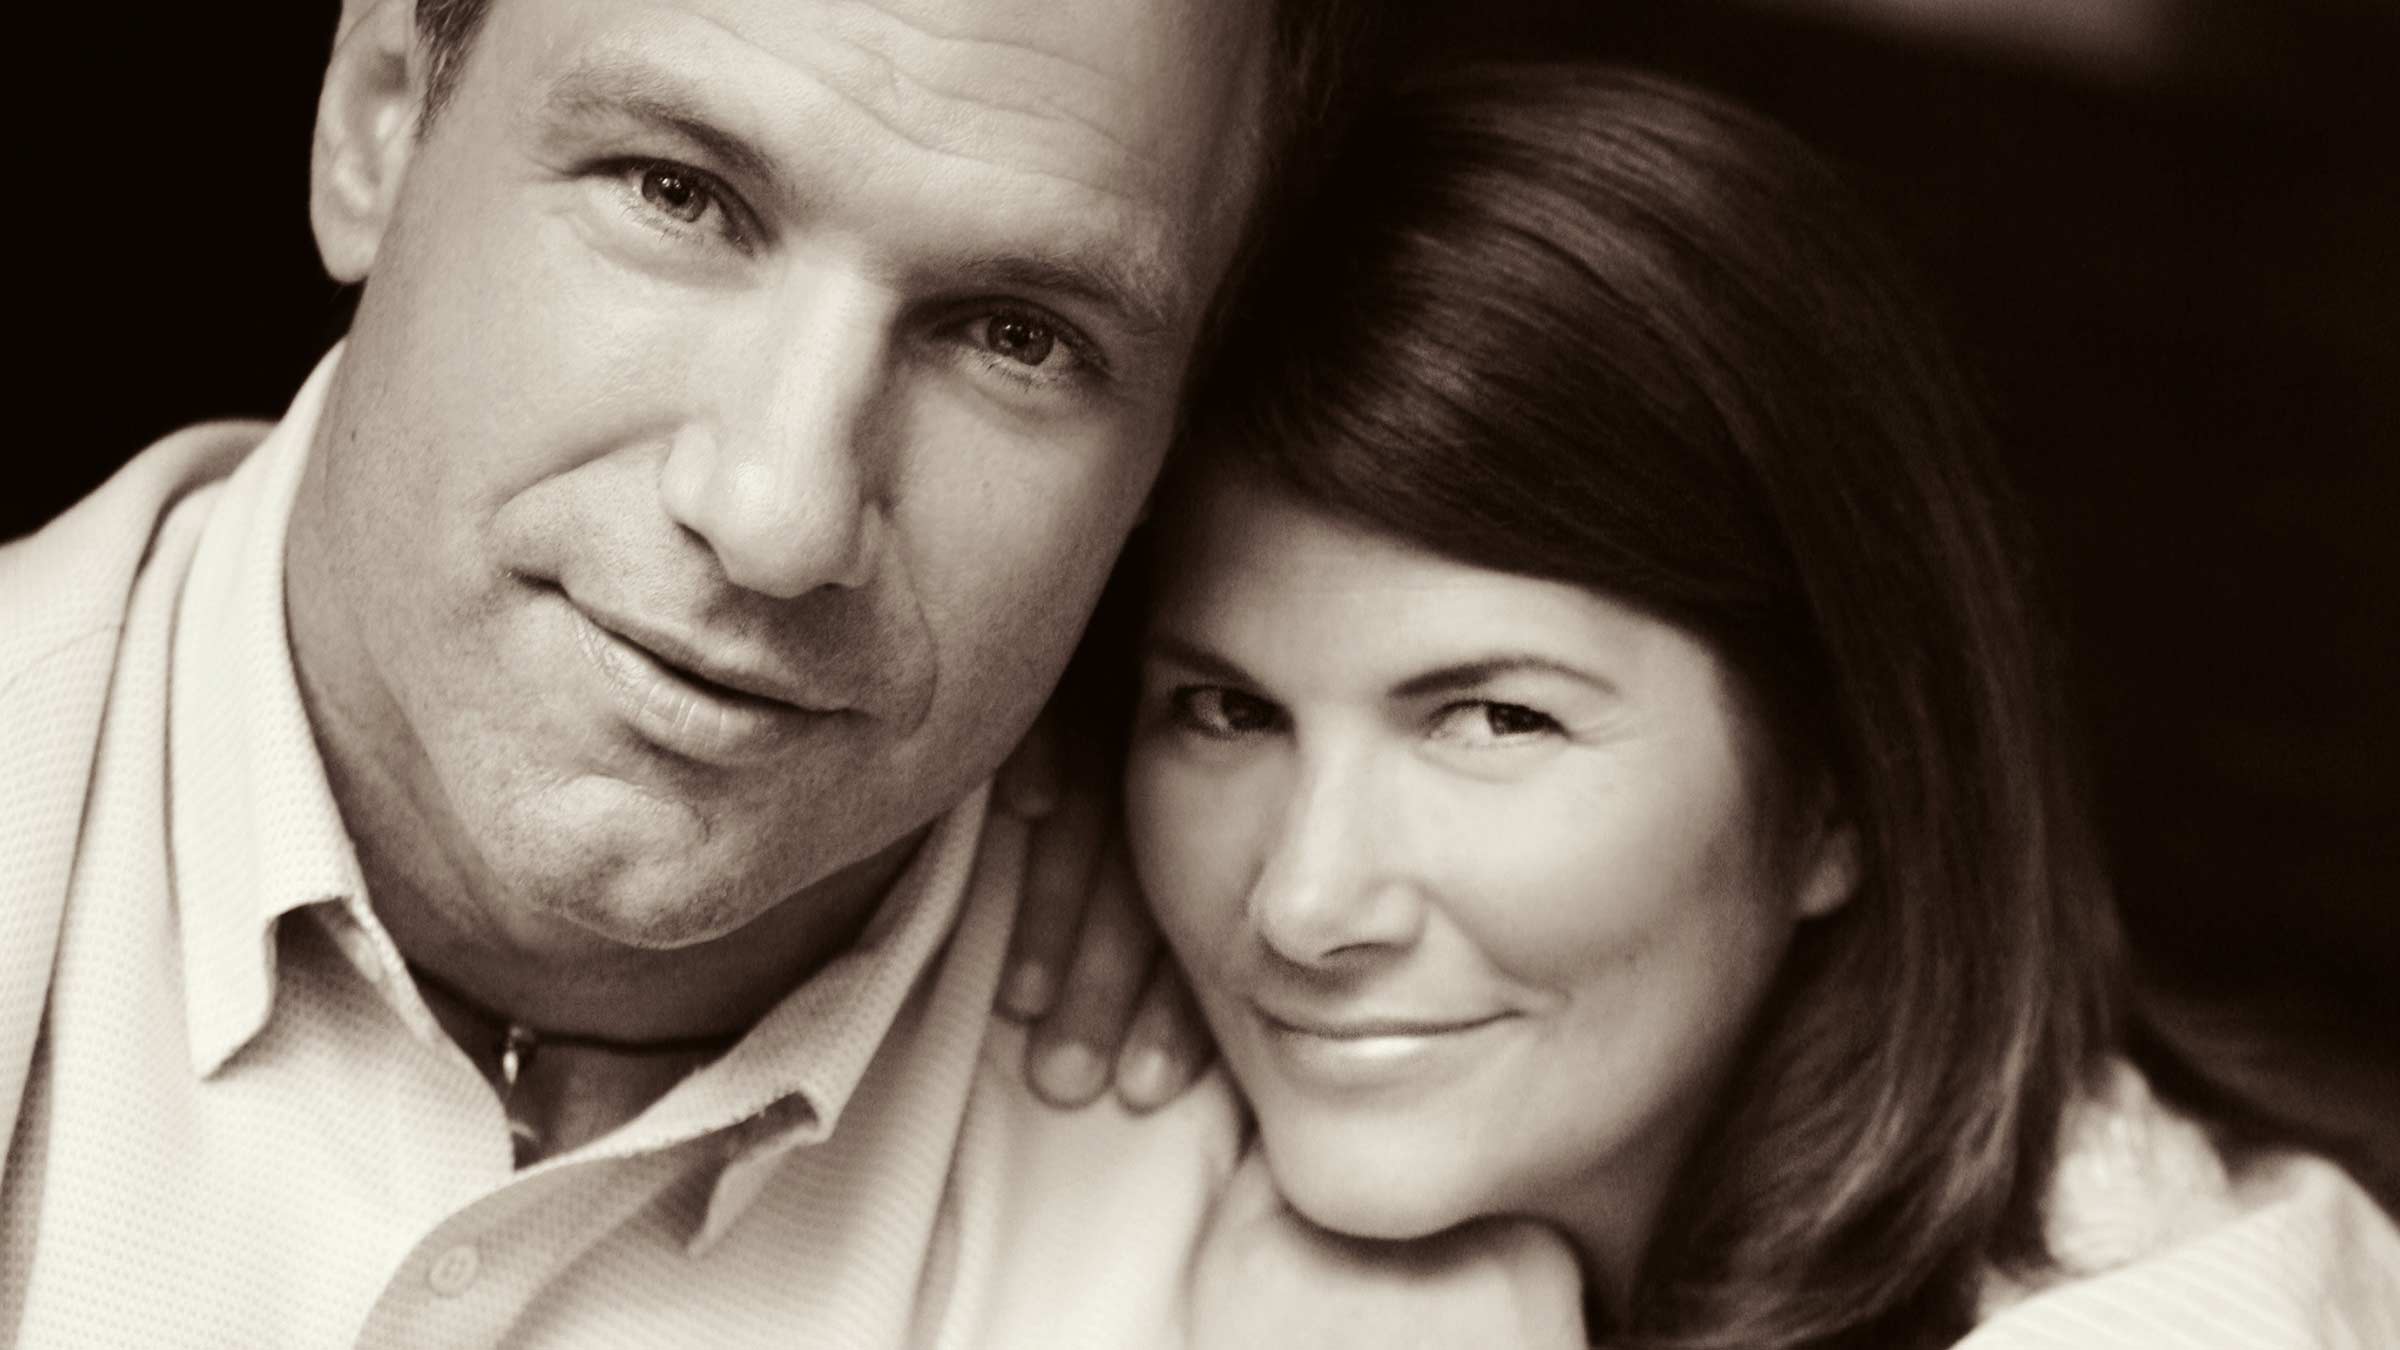 Stefanie Spielman and her husband Chris